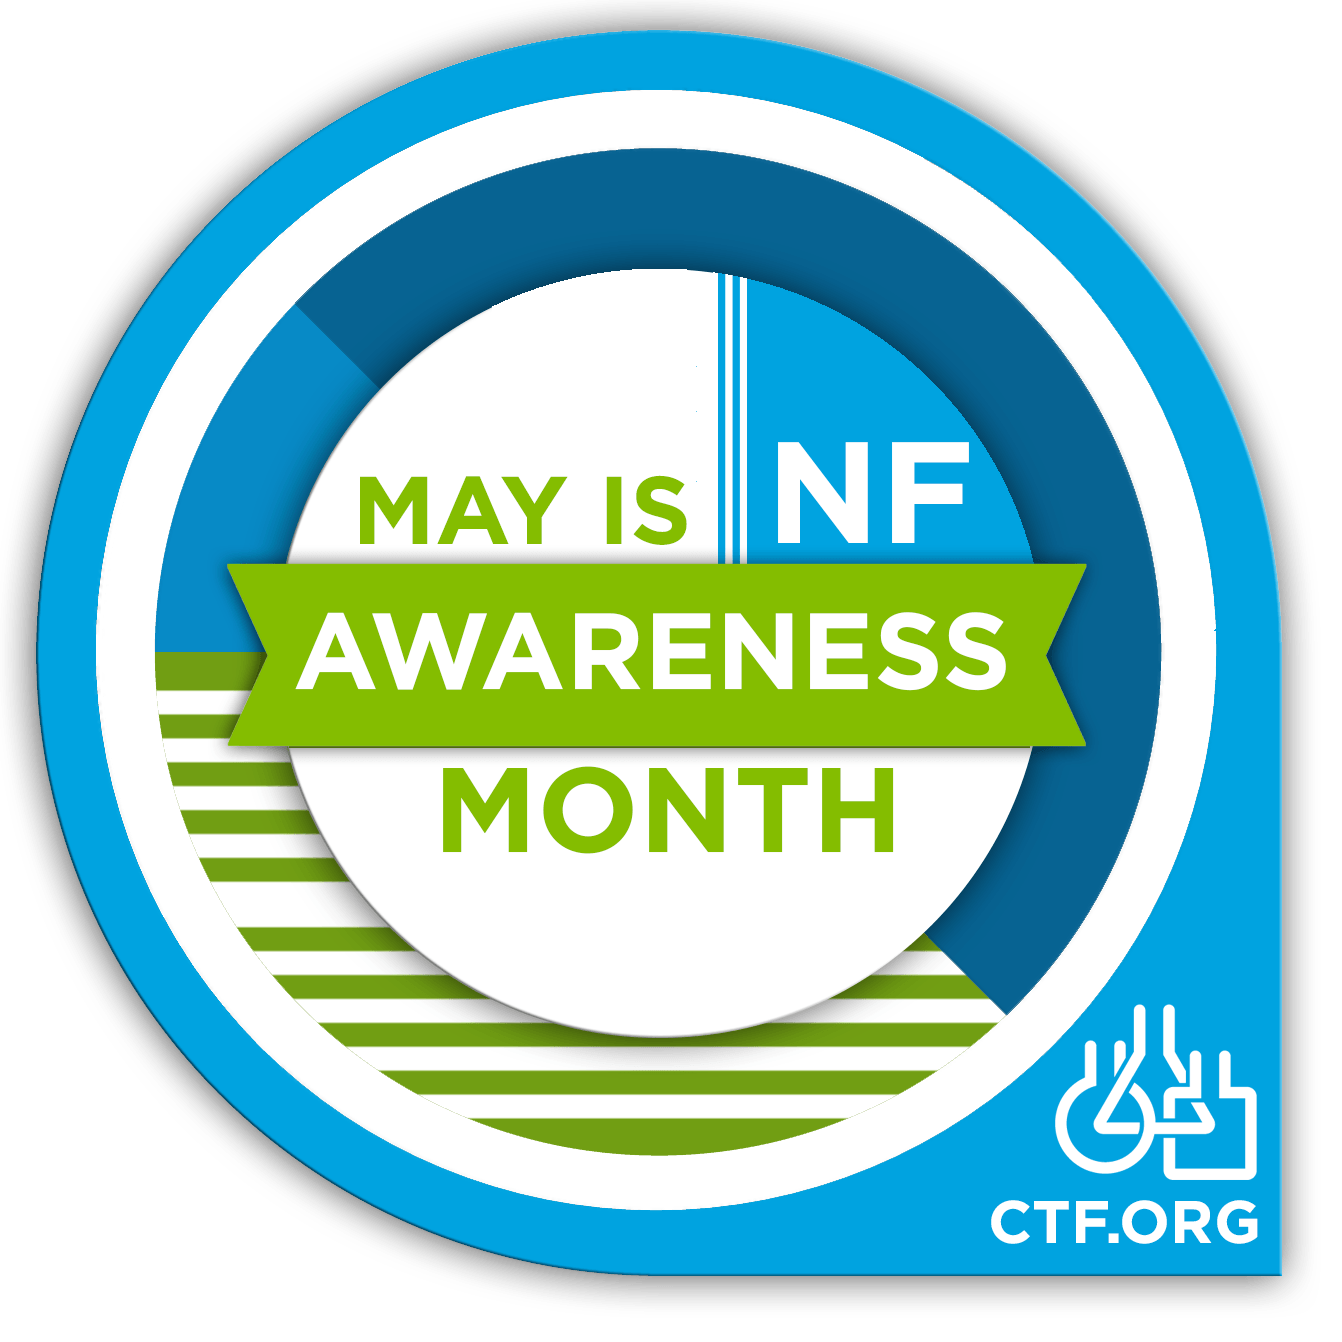 CTF Logo - Branding | Children's Tumor Foundation